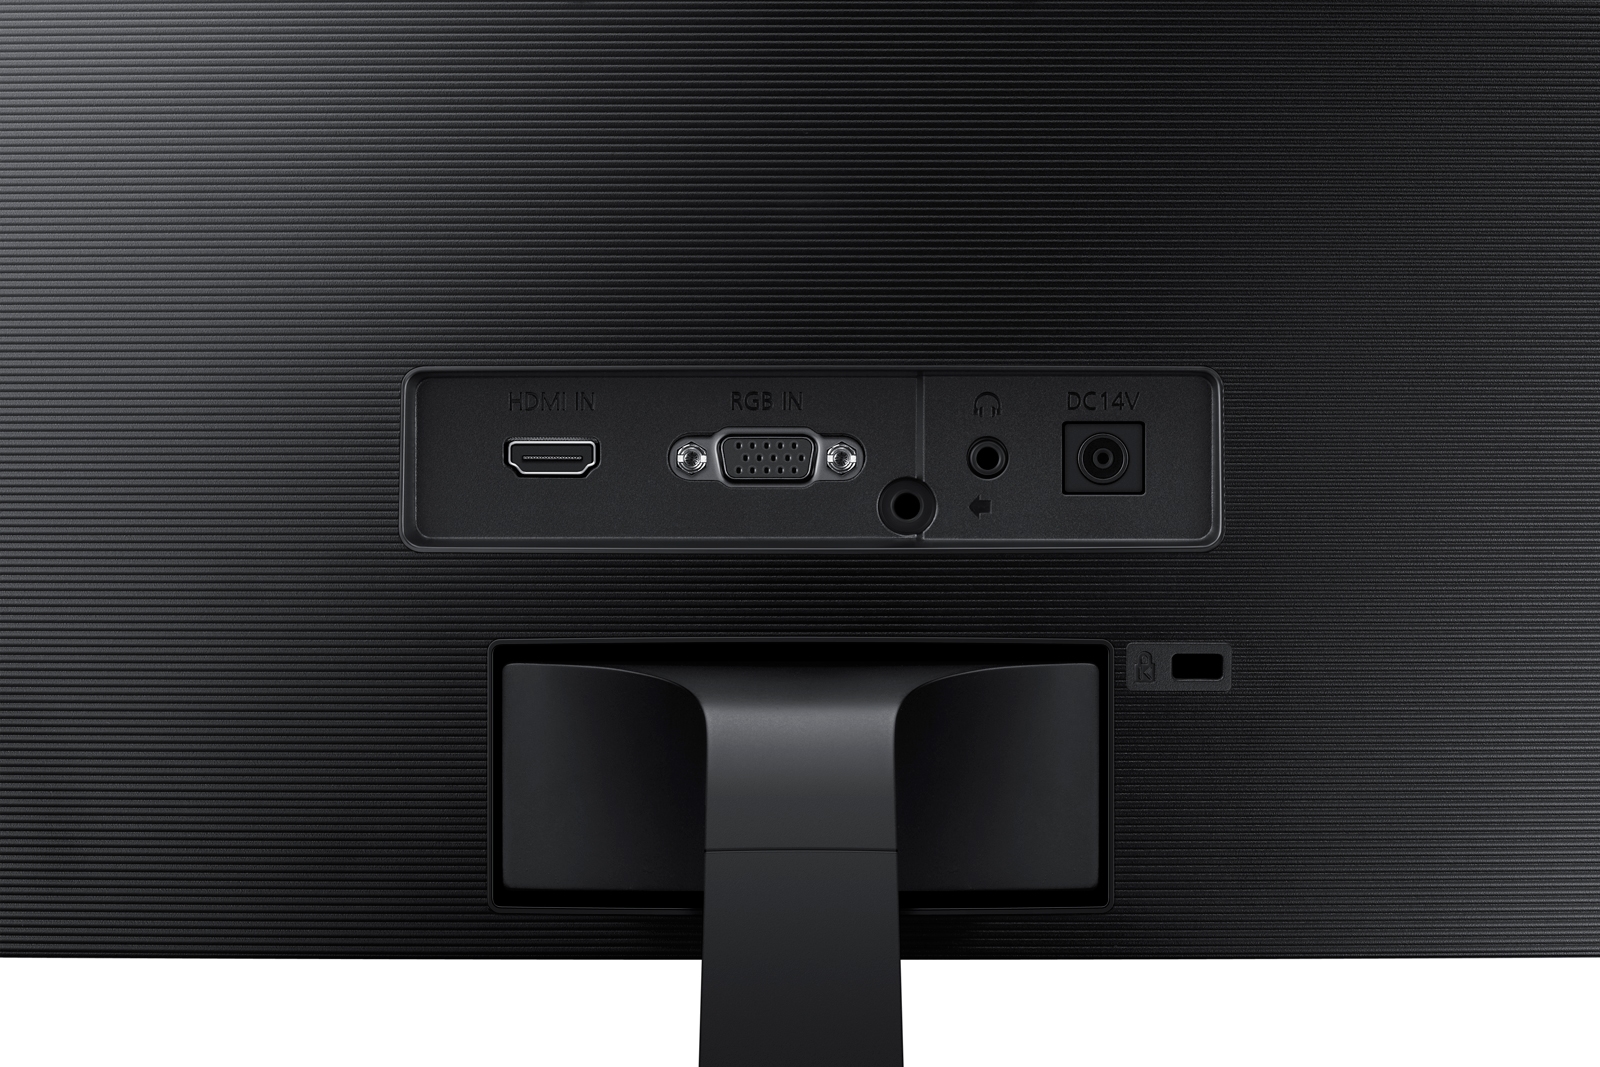 Samsung - Ecran PC incurvé CF396 27